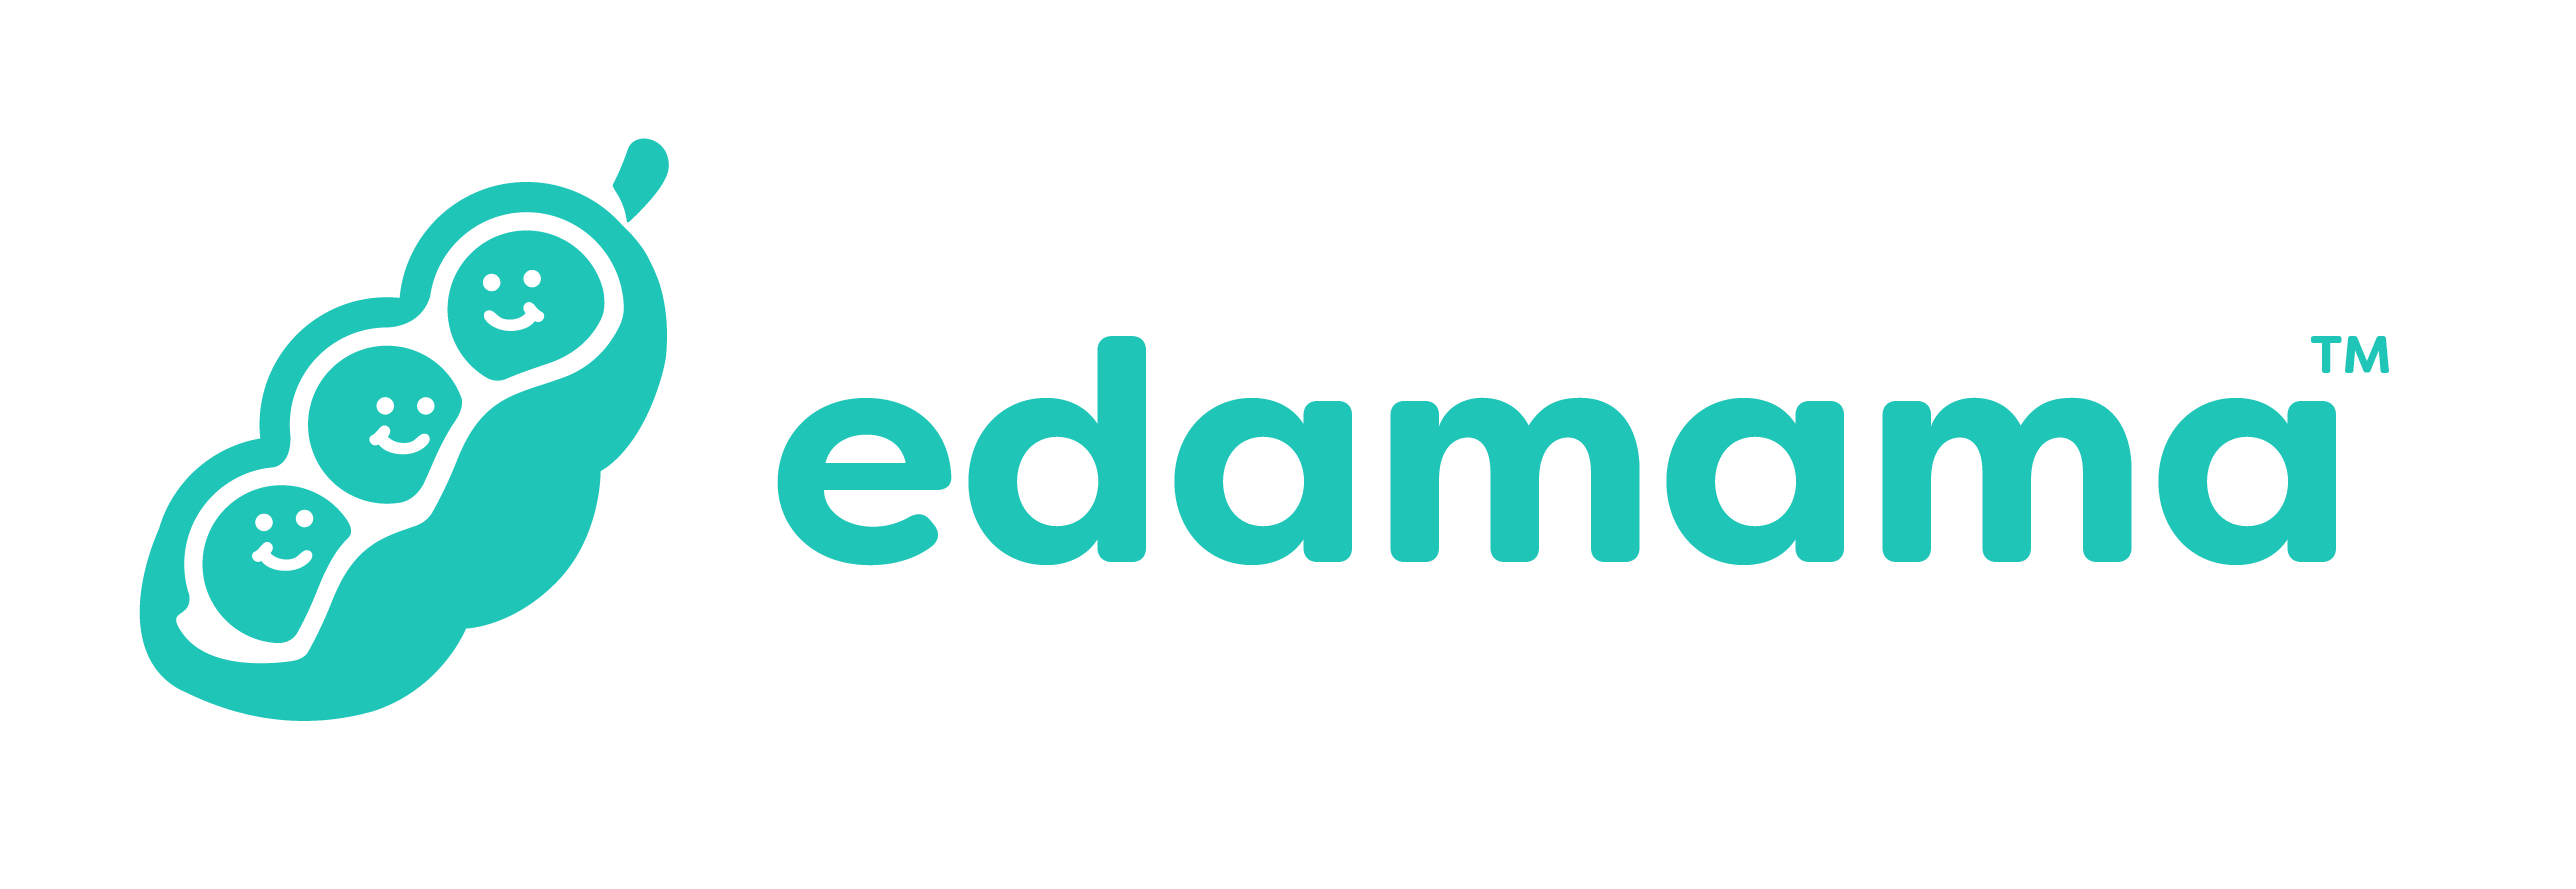 菲律宾母婴电商平台Edamama获2000万美元A轮融资